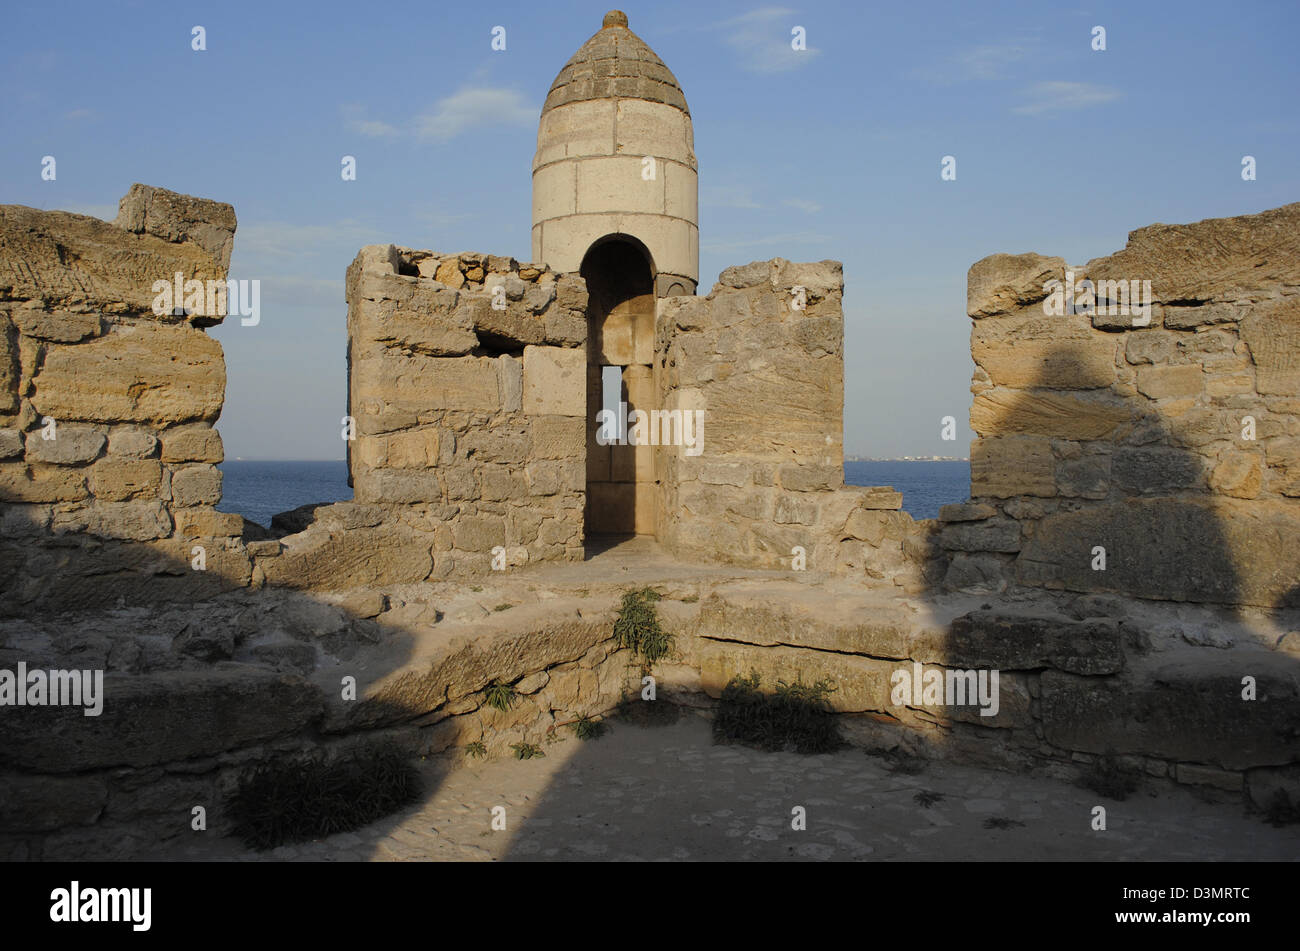 L'Ucraina. Repubblica autonoma di Crimea. Yeni-Kale fortezza, costruita dai Turchi Ottomani, 1699-1706. Nei pressi di Kerch. Foto Stock